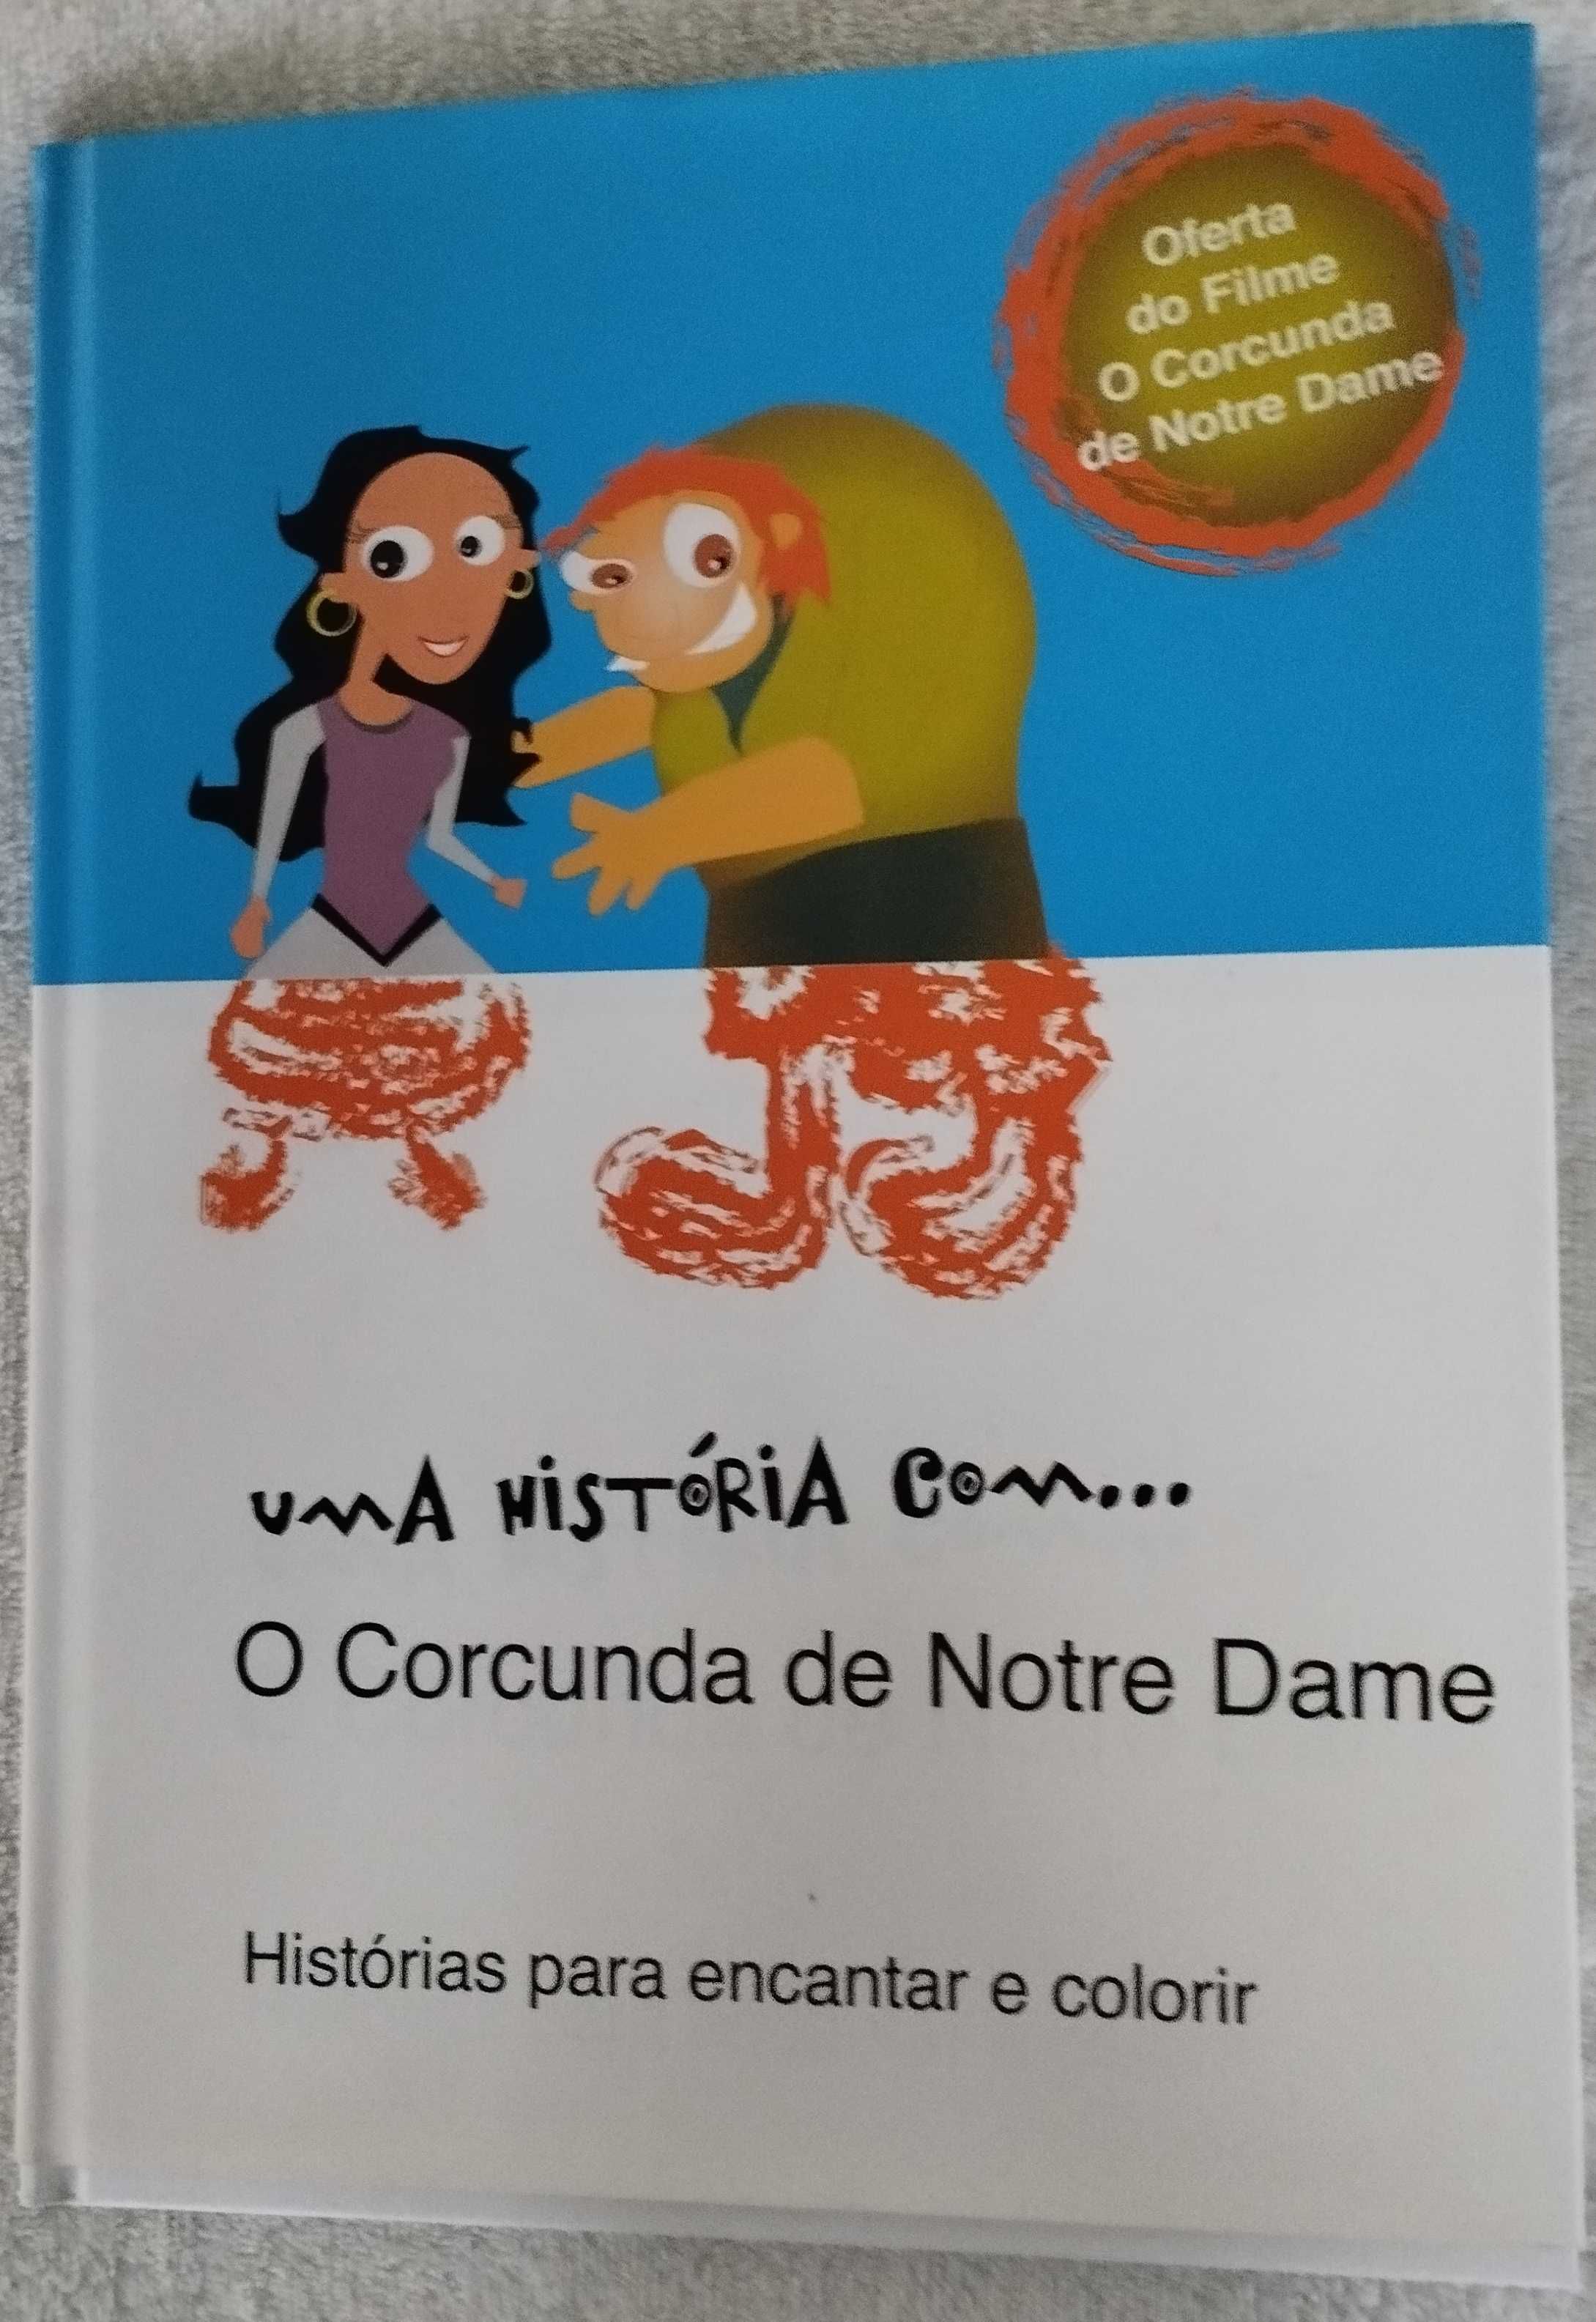 Livros Infantis desde 4 Euros